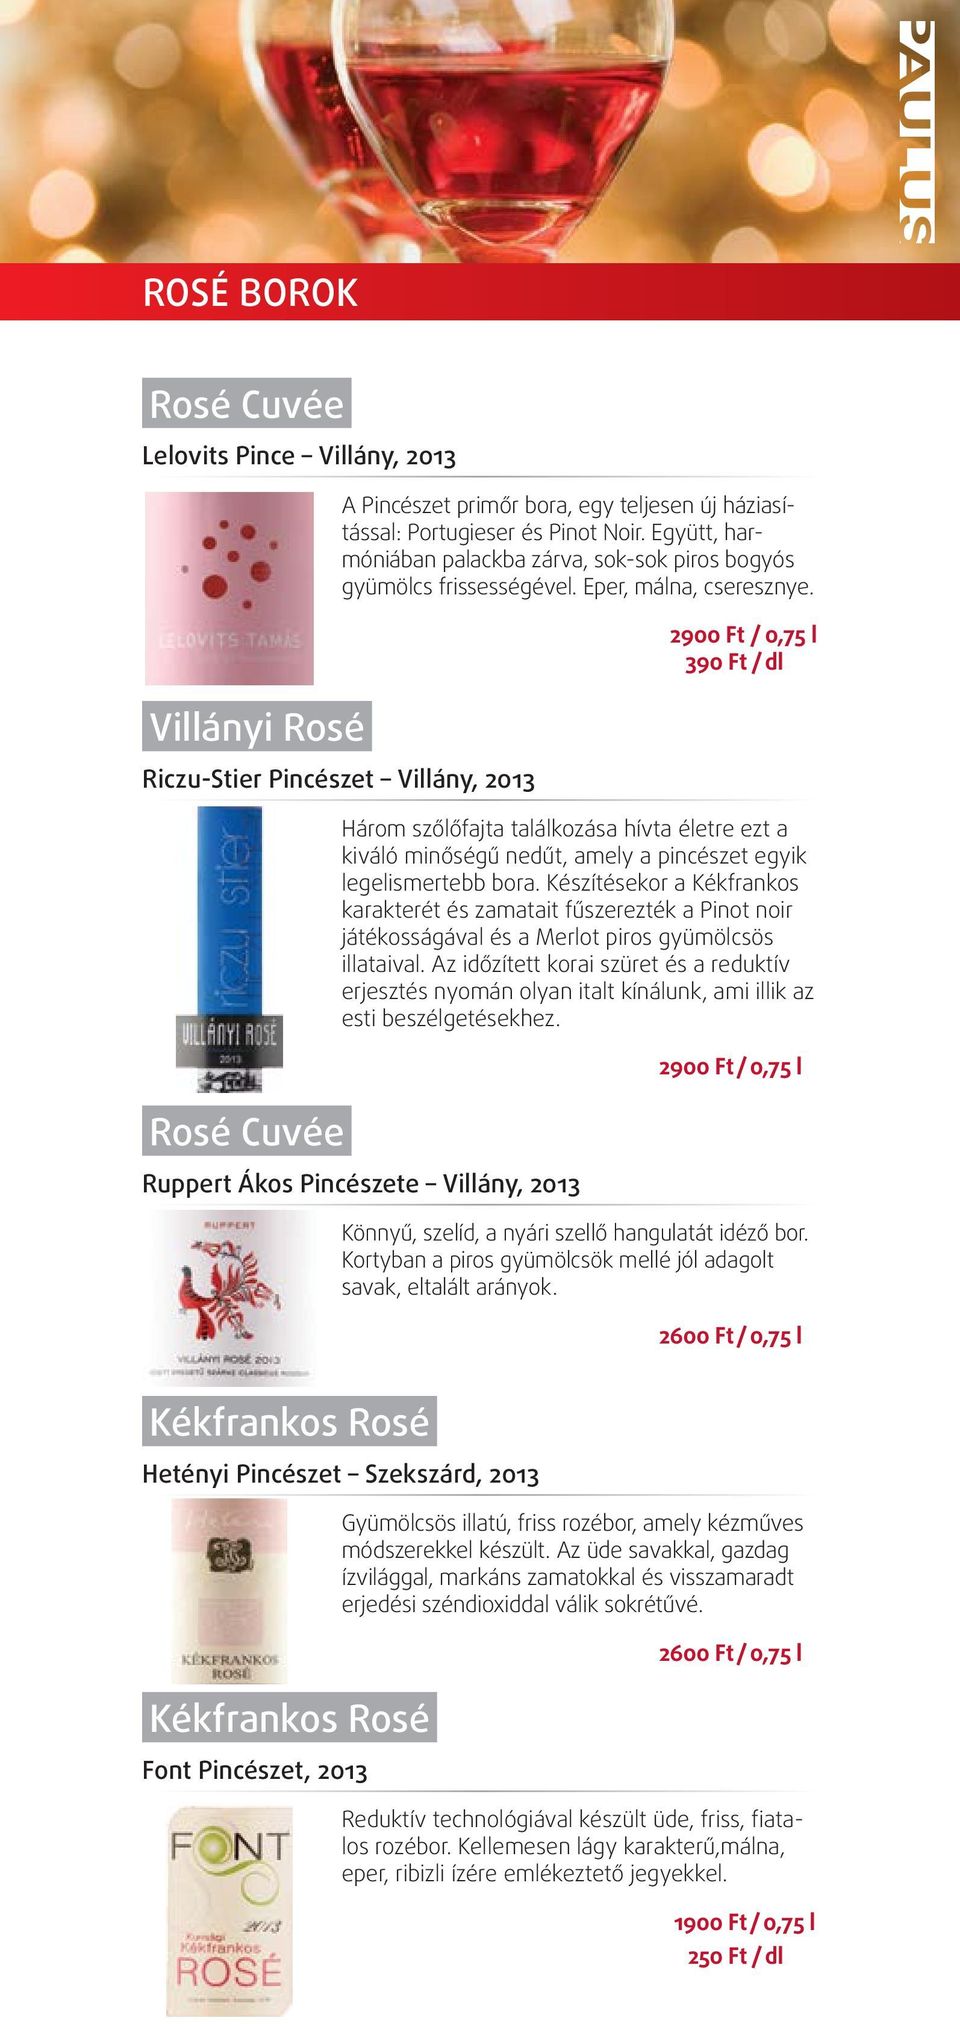 riczu-stier pincészet villány, 2013 rosé Cuvée 2900 Ft / 0,75 l / dl Három szőlőfajta találkozása hívta életre ezt a kiváló minőségű nedűt, amely a pincészet egyik legelismertebb bora.